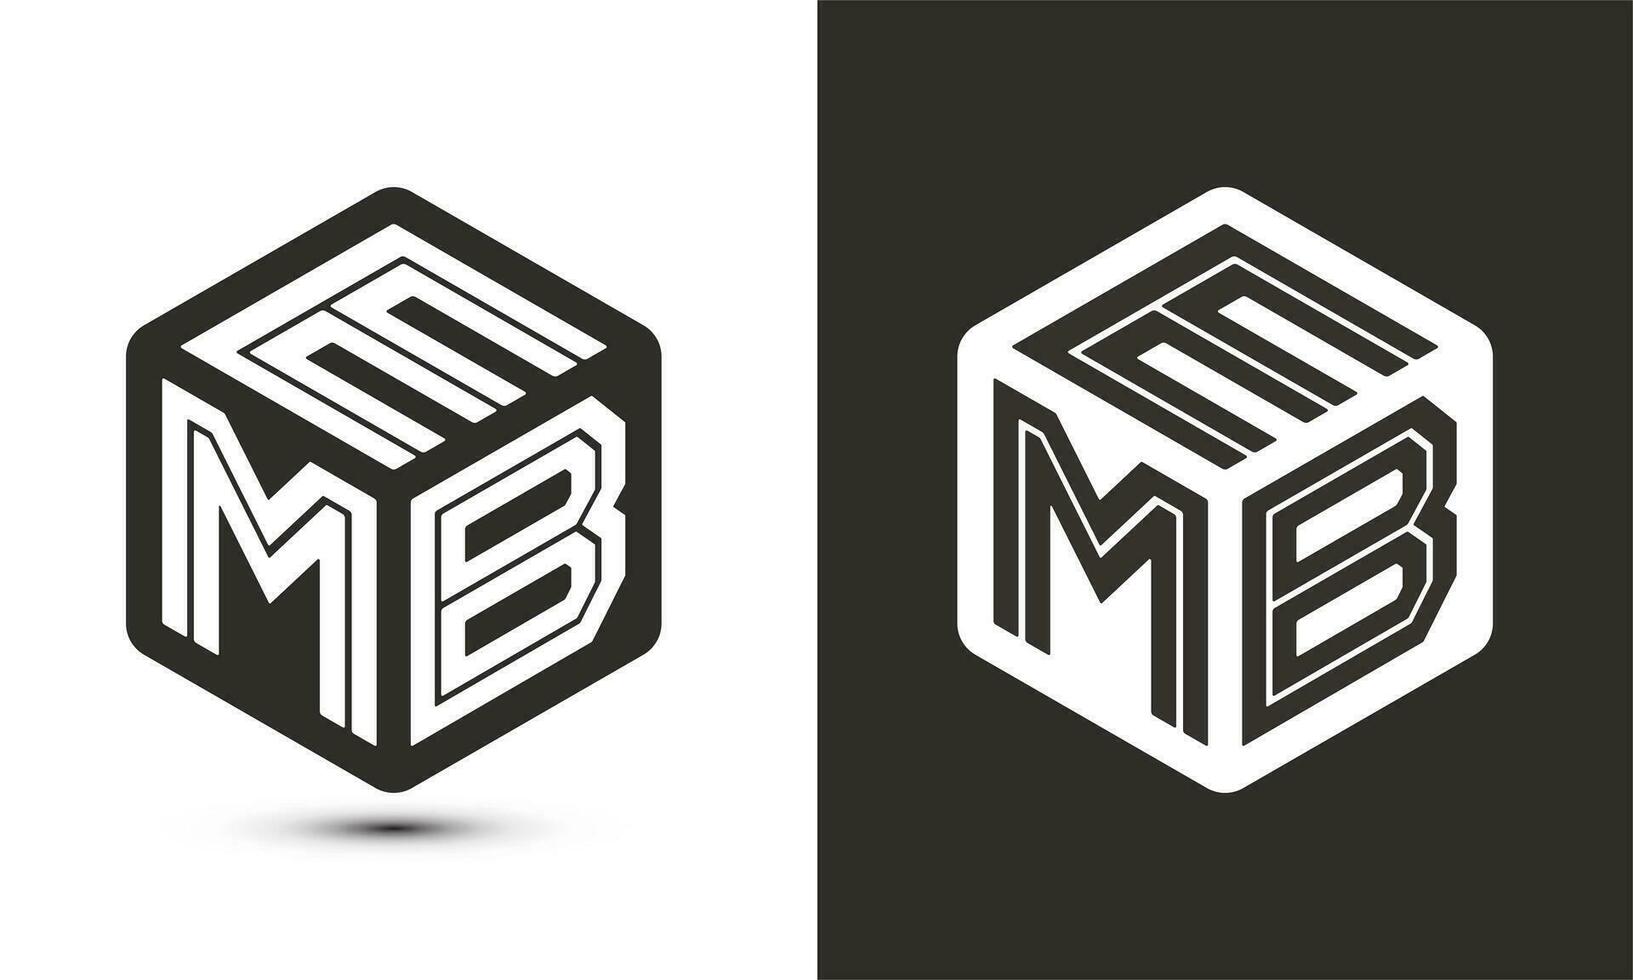 EMB letter logo design with illustrator cube logo, vector logo modern alphabet font overlap style.